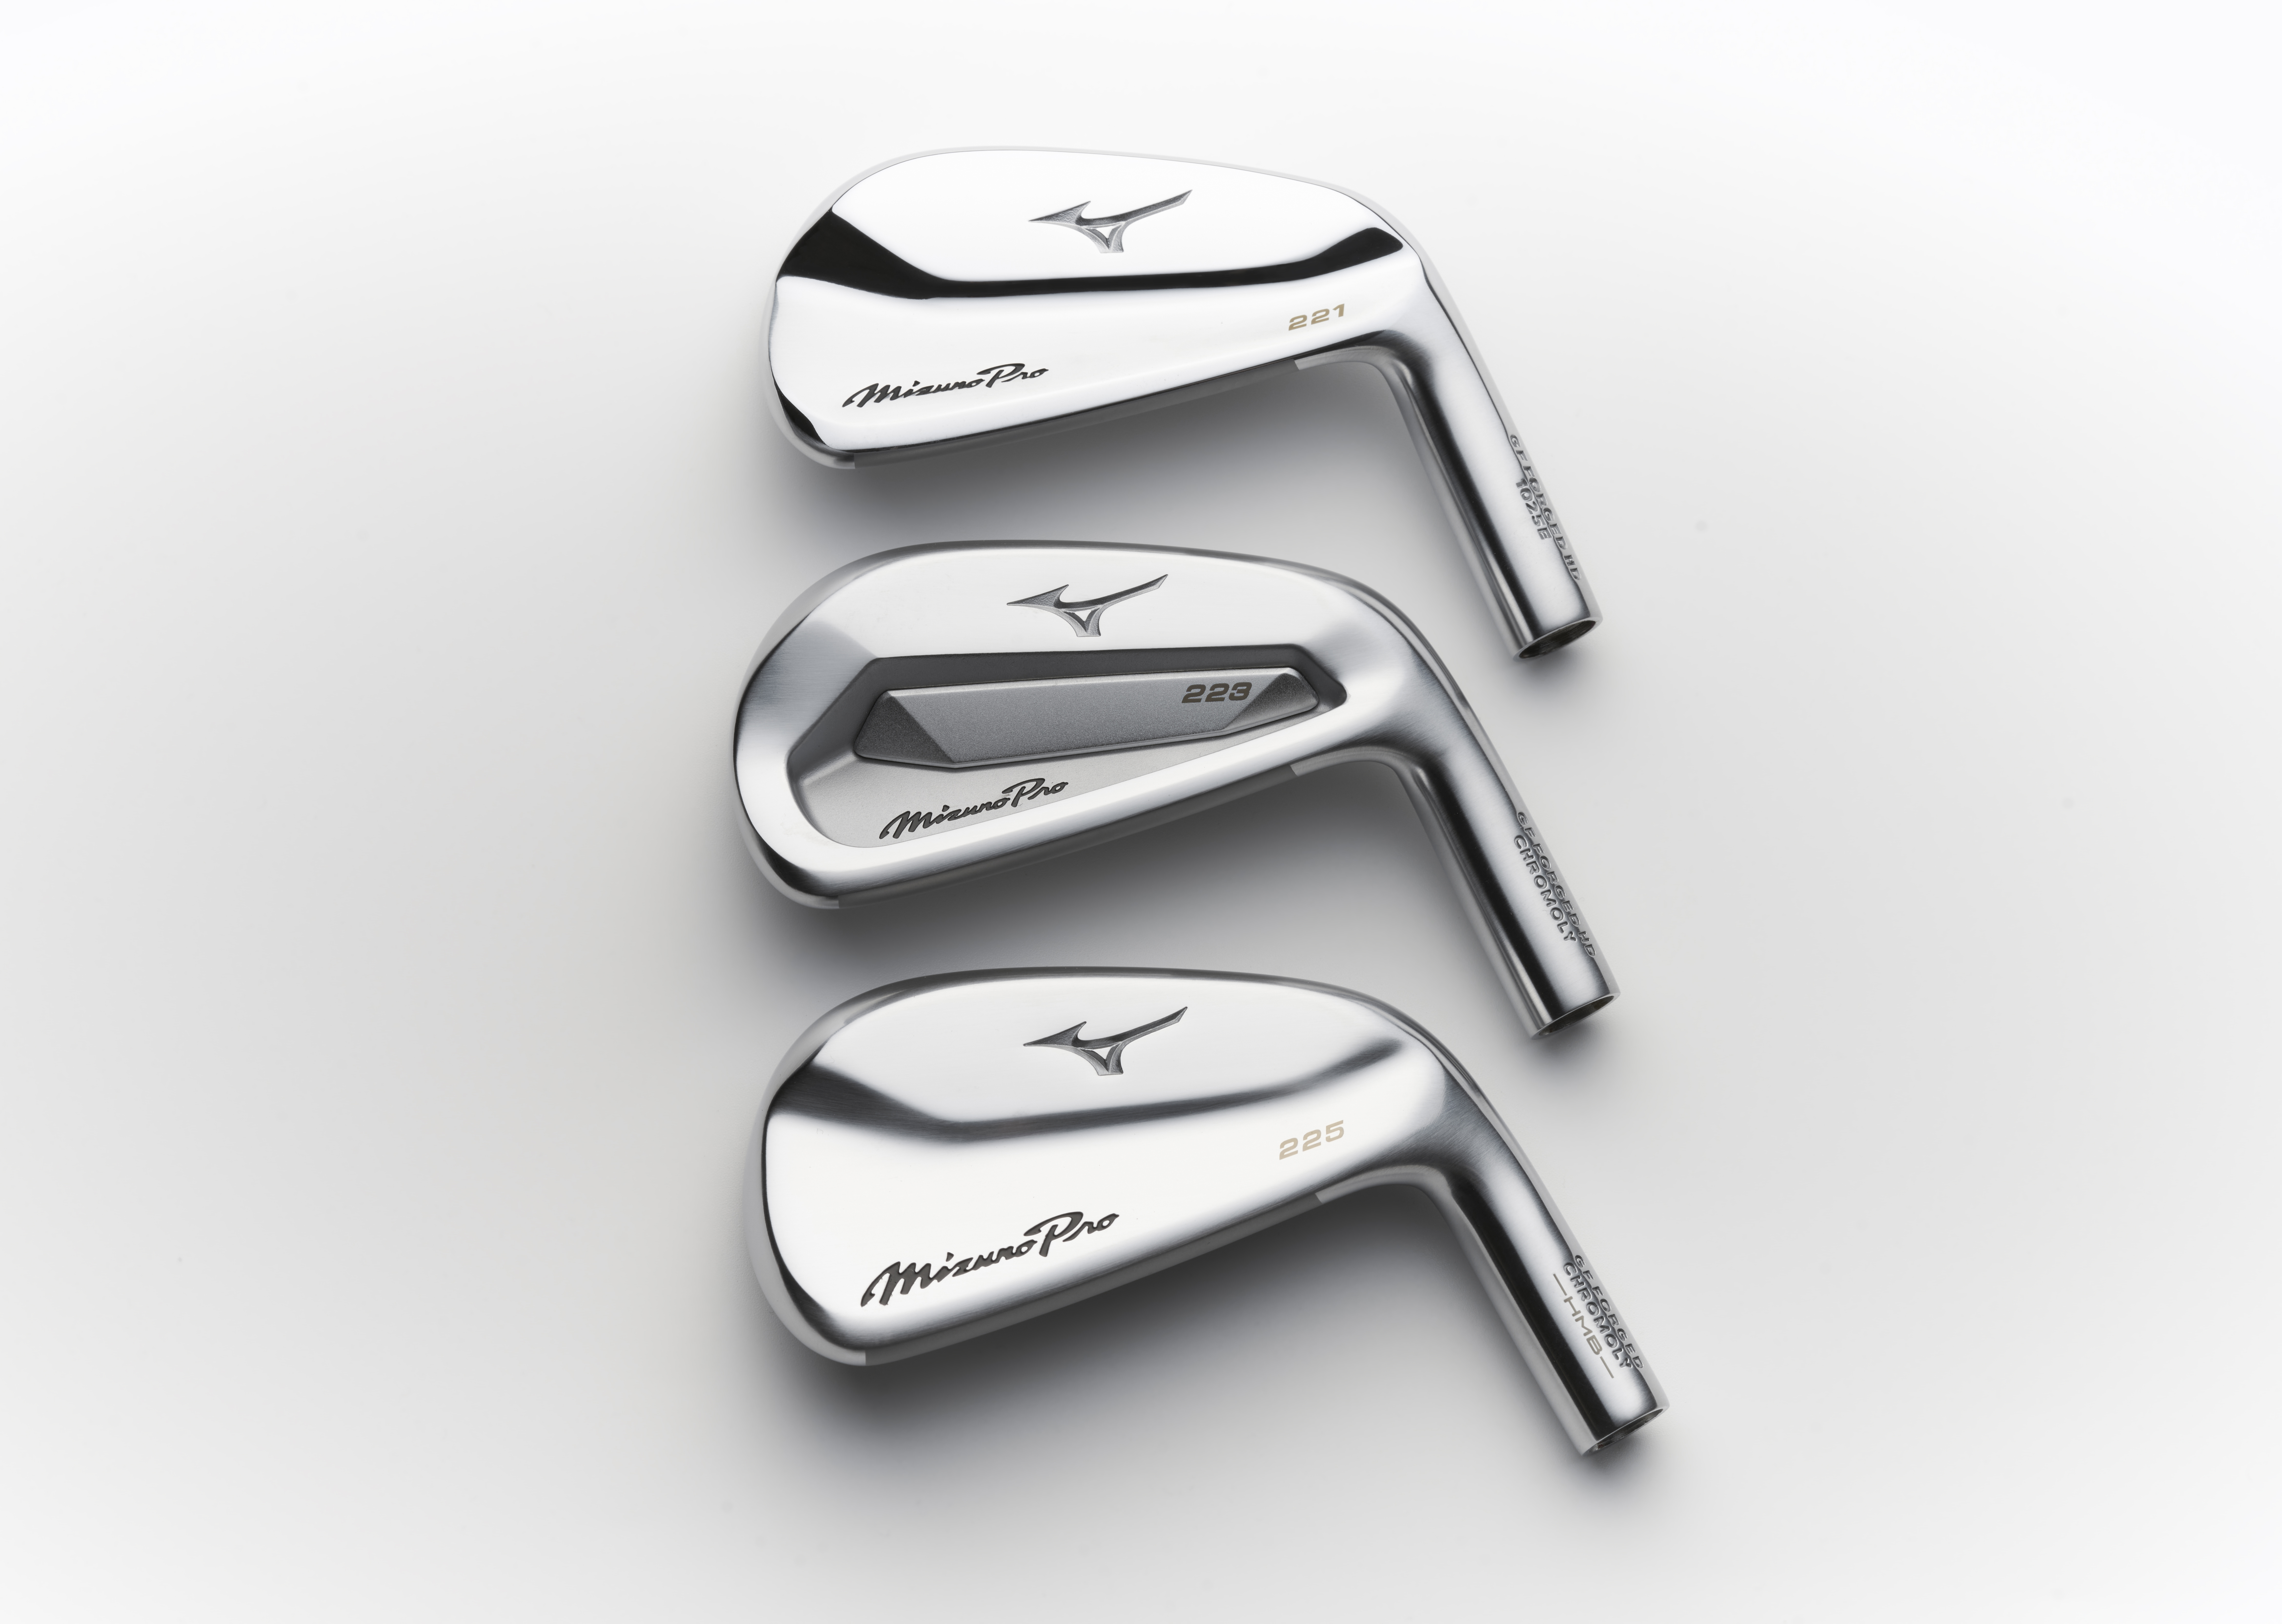 New Mizuno Pro irons | Golf Equipment 